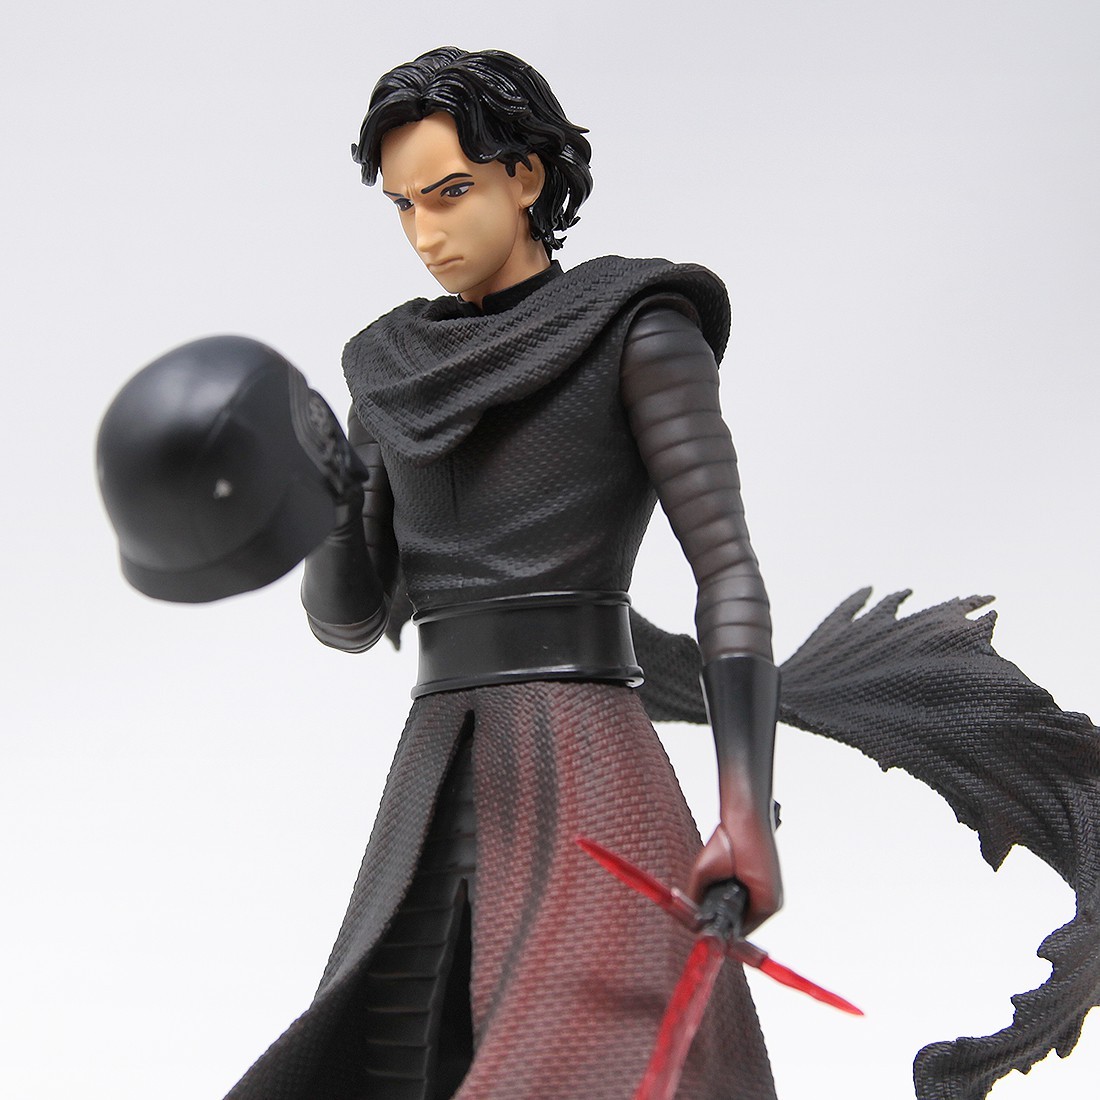 11212円 売り込み コトブキヤ Kotobukiya ARTFX Star Wars The Force Awakens Kylo Ren Statue black ユニセックス